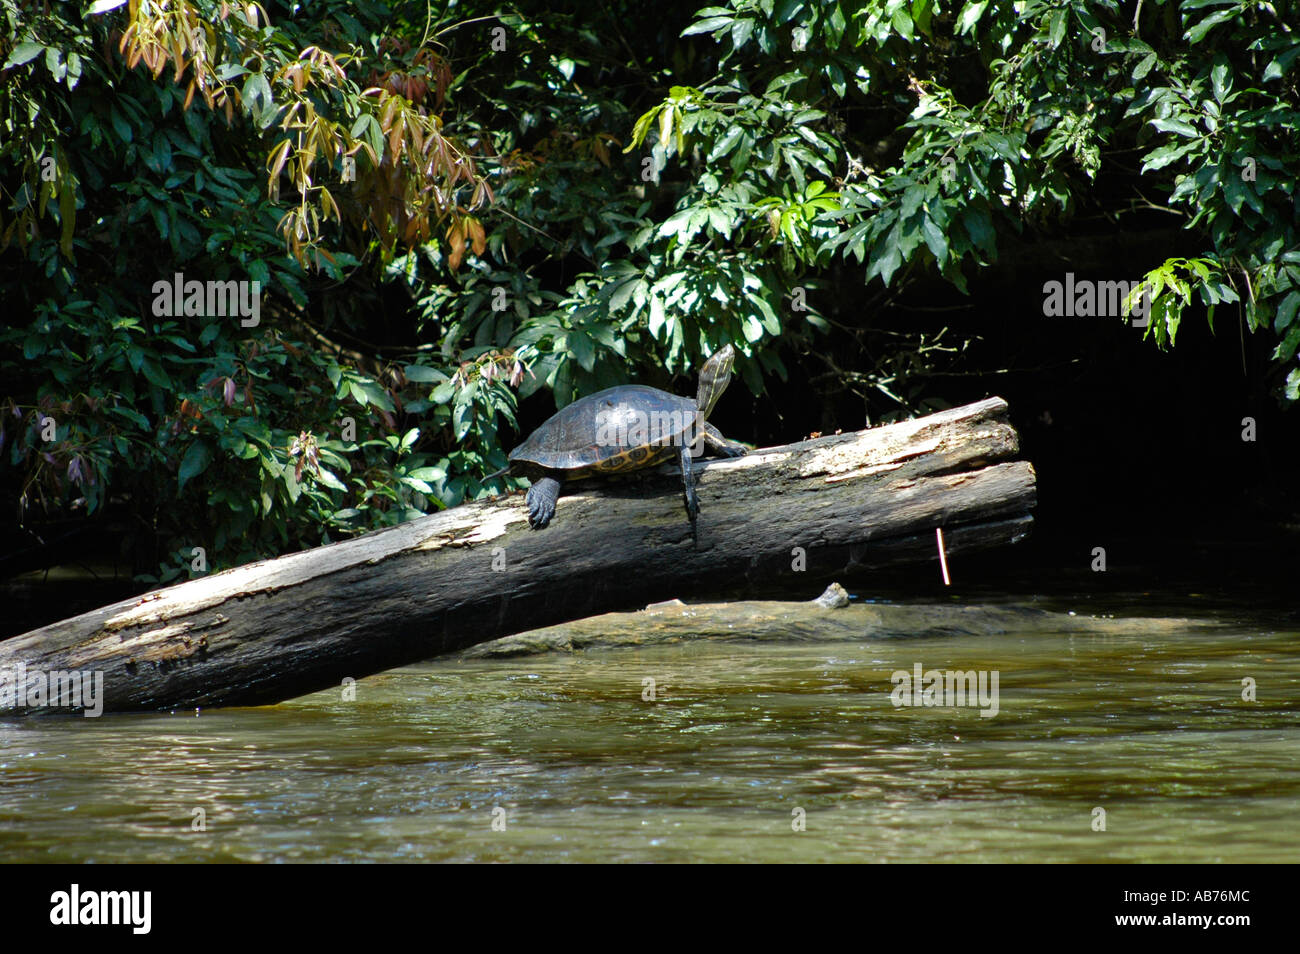 Black River Turtle, Tortuguero National Park, Costa Rica, Central America Stock Photo